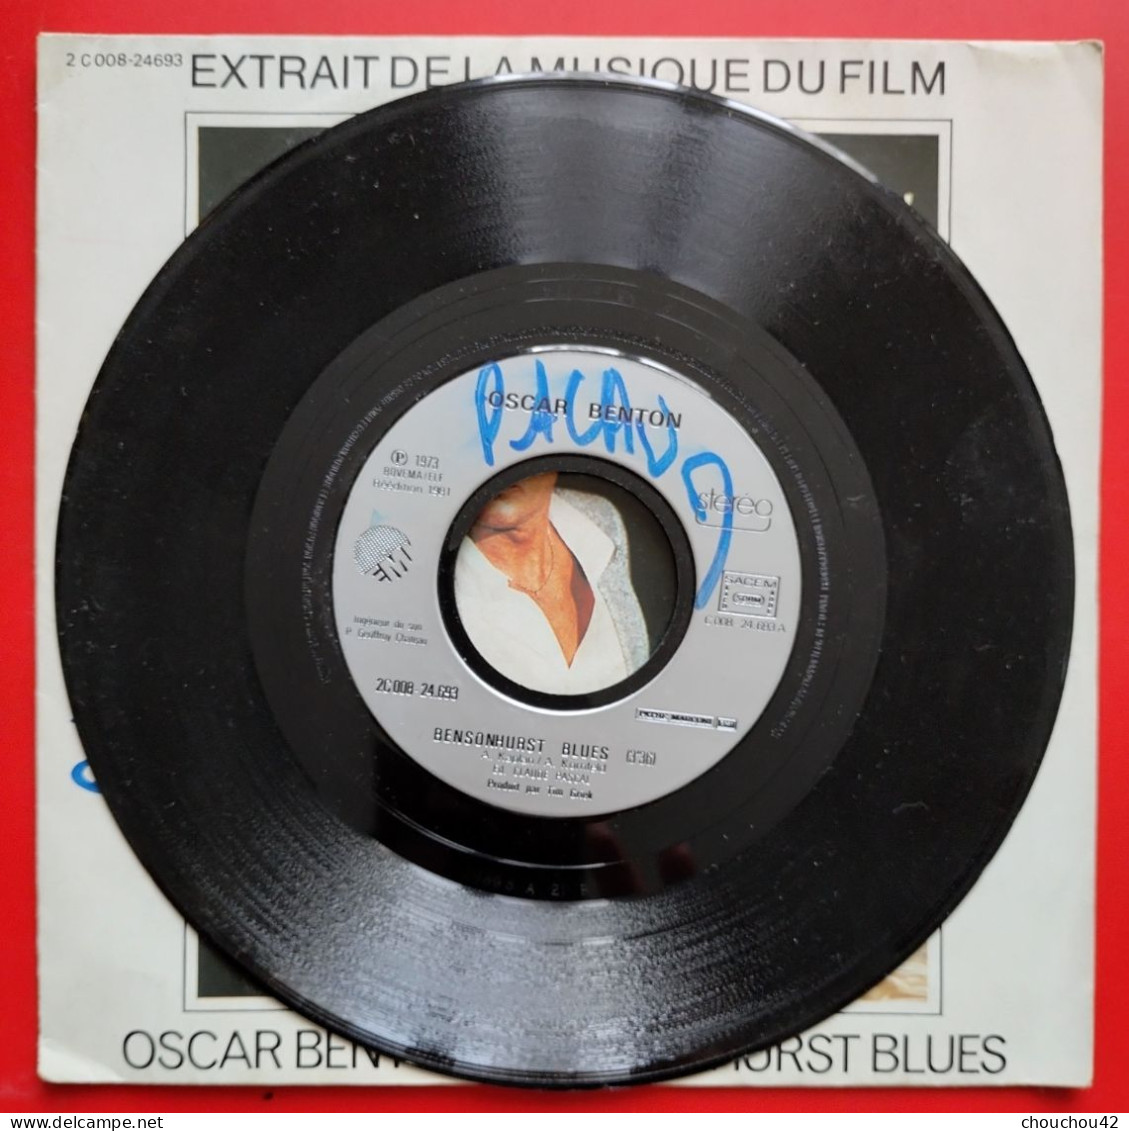 BO Du Film Pour La Peau D'un Flic Bensonhurt Blues - Soundtracks, Film Music